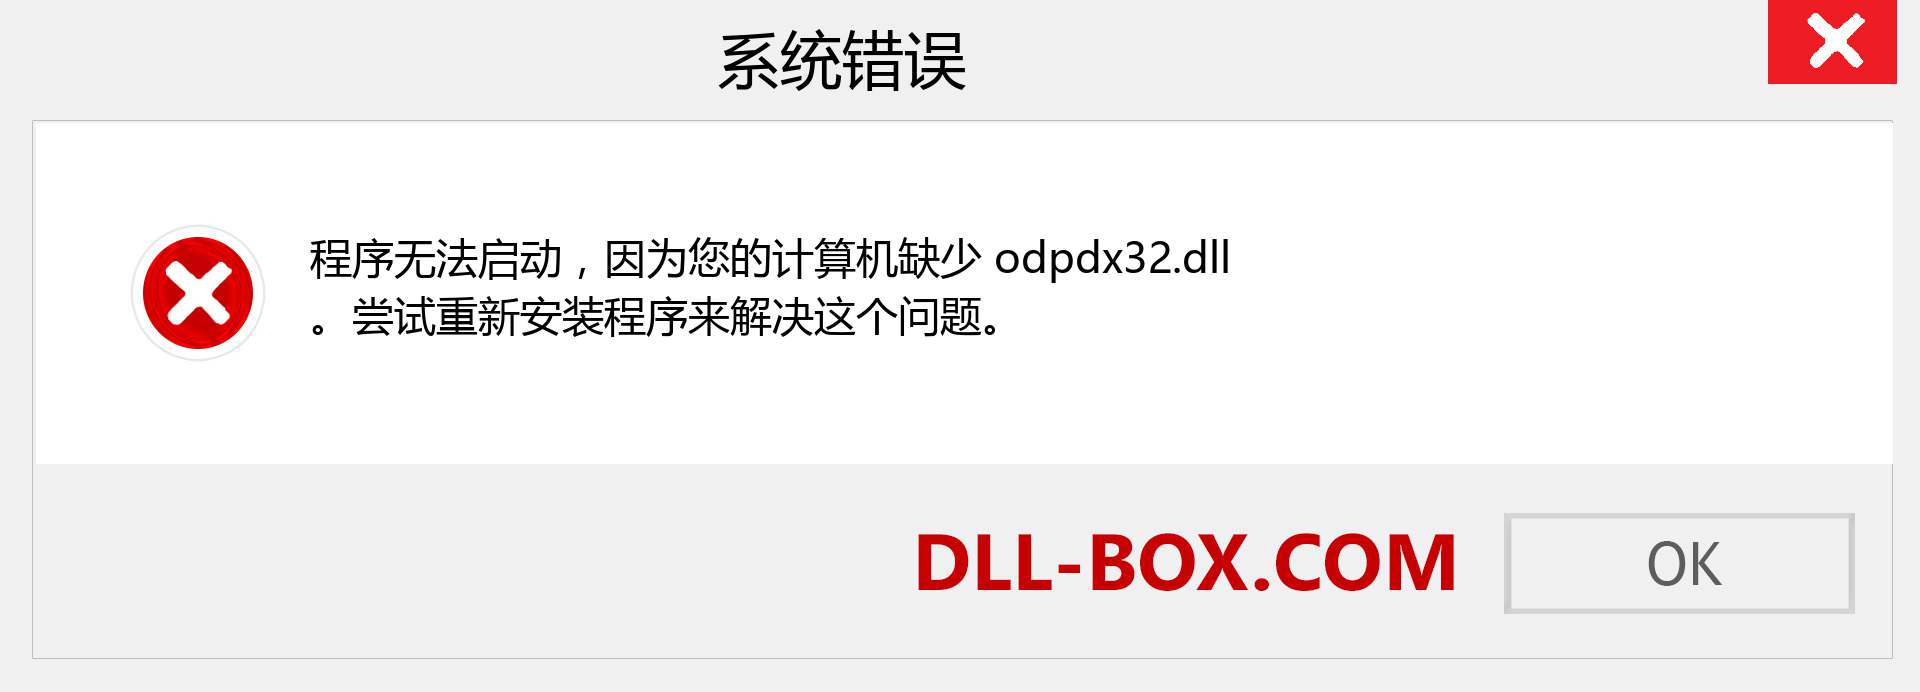 odpdx32.dll 文件丢失？。 适用于 Windows 7、8、10 的下载 - 修复 Windows、照片、图像上的 odpdx32 dll 丢失错误